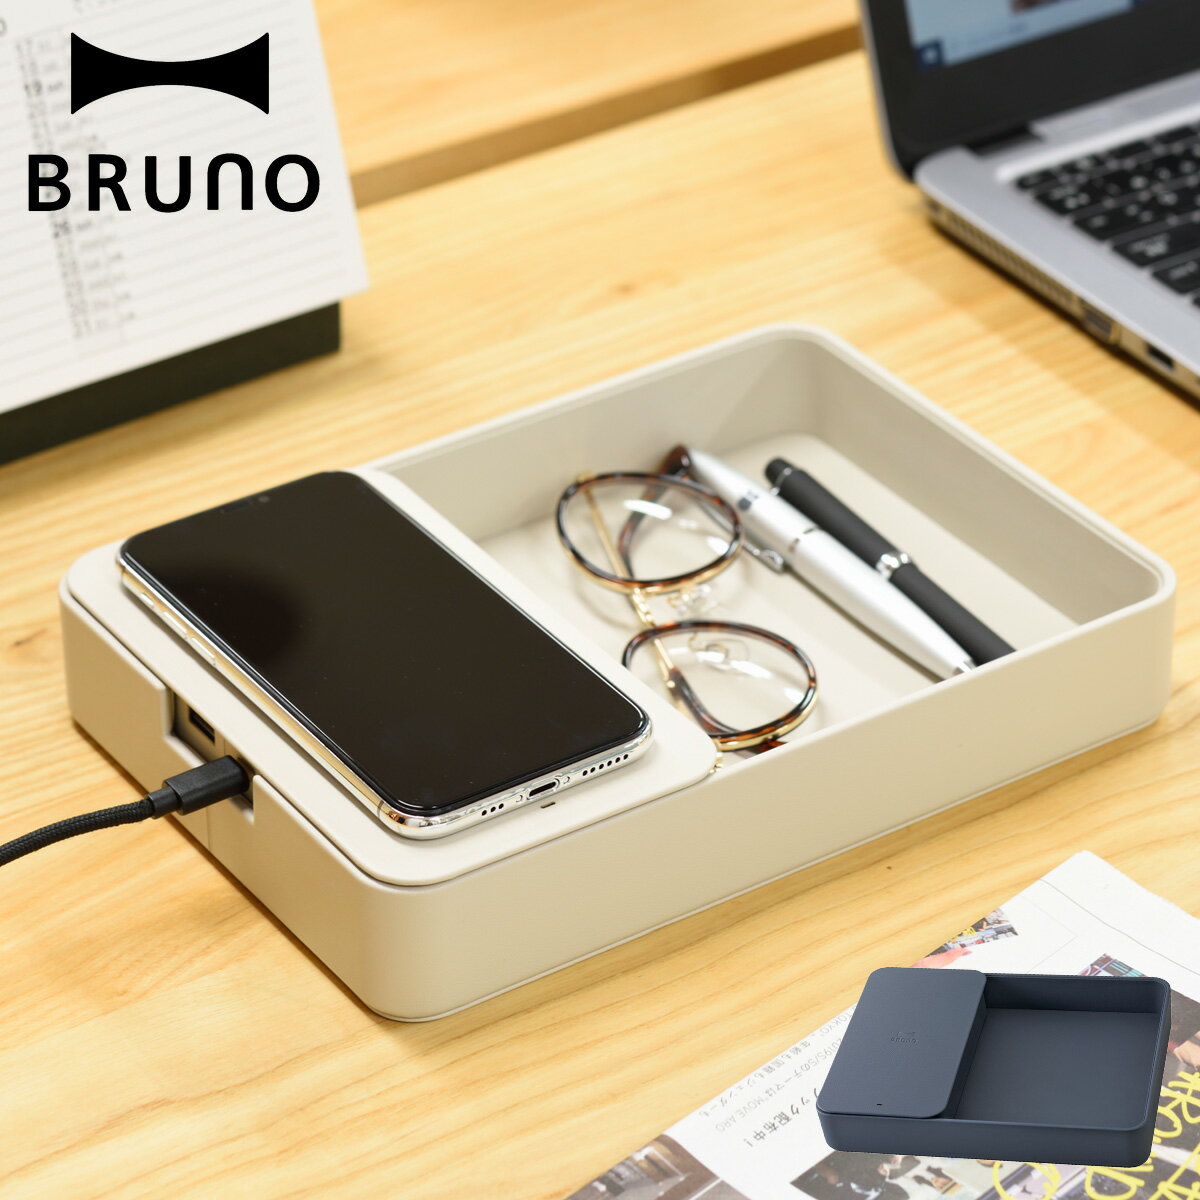 ブルーノ BRUNO ワイヤレス充電器 デスクオーガナイザー 収納ケース 小物入れ QI iPhone アンドロイド 携帯 スマホケース 置くだけ充電 ワイヤレスチャージャー トレー型収納ケース グレージュ ネイビー BDE052